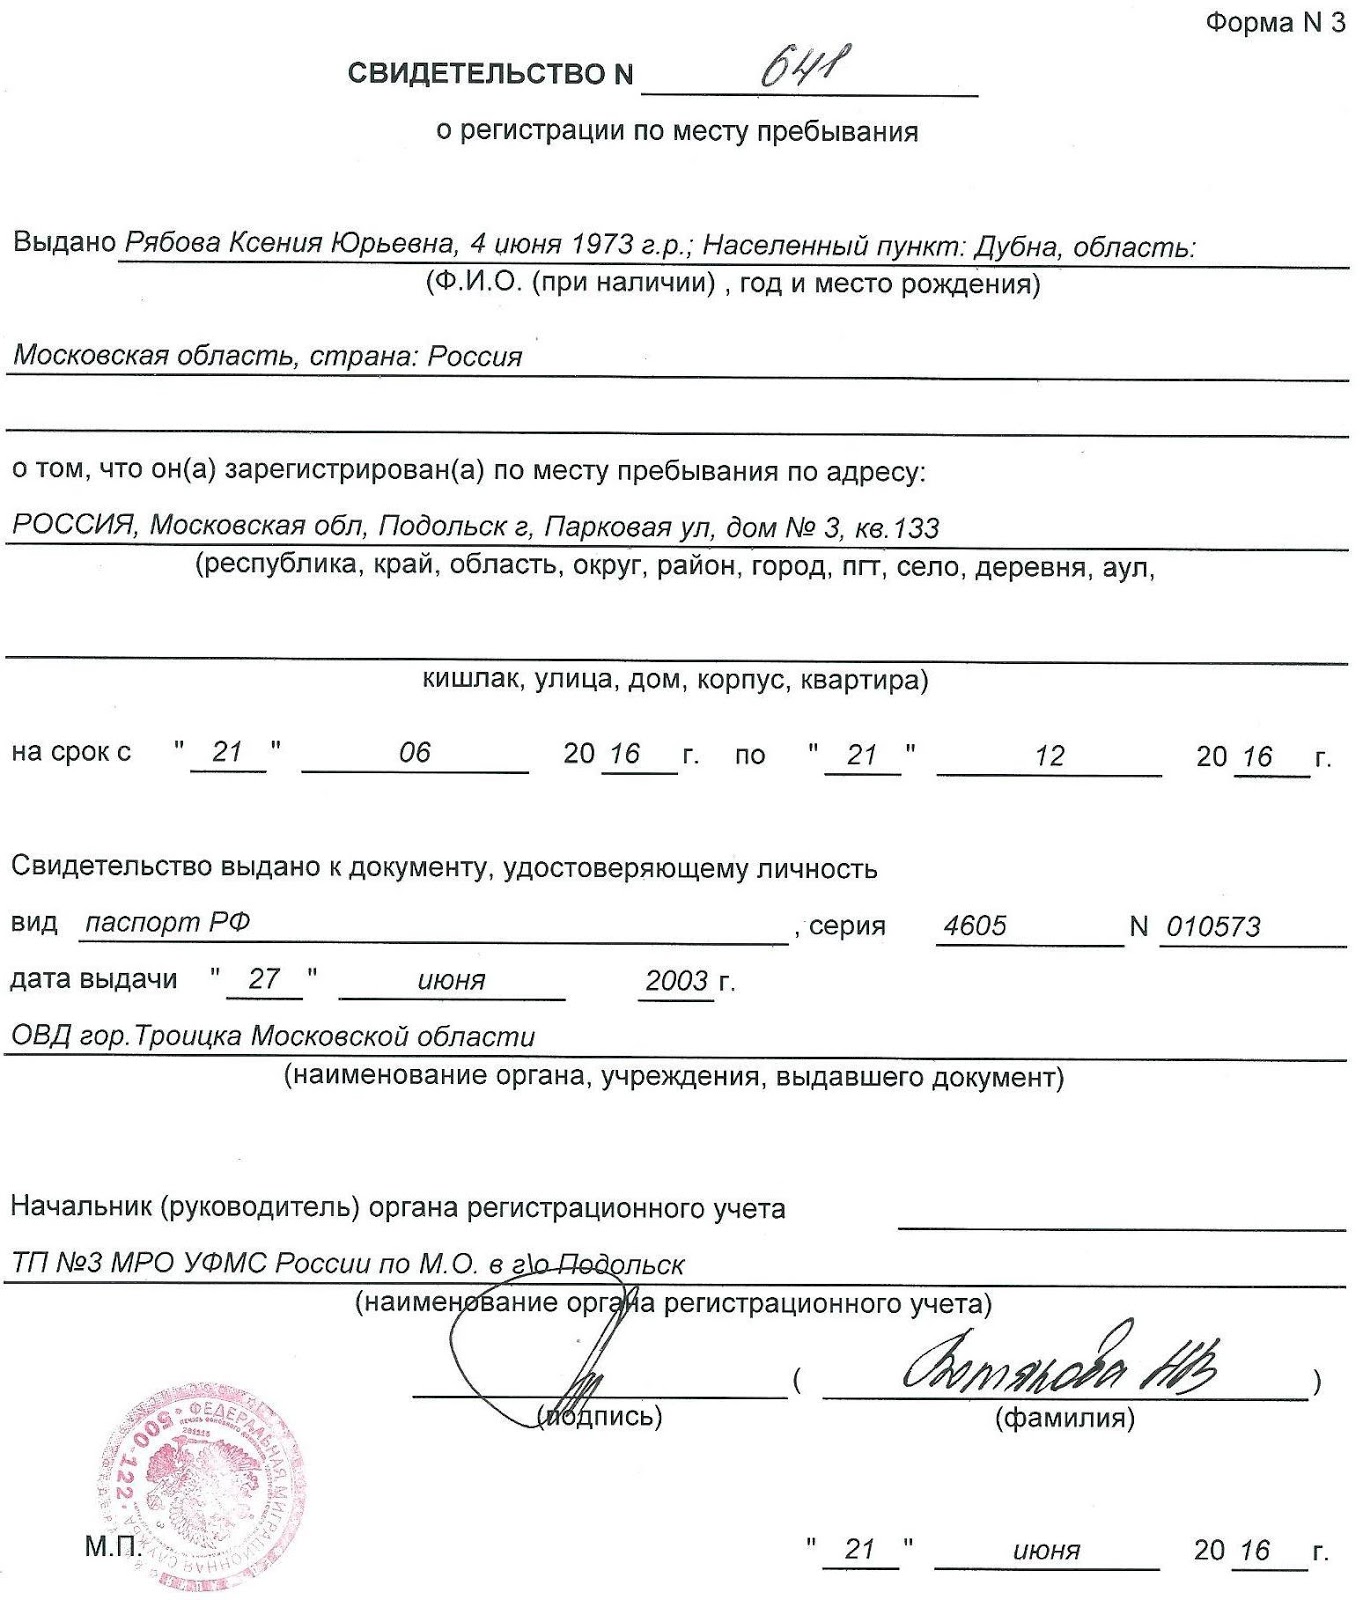 Сделать регистрацию в москве msk propiska. Свидетельство о регистрации по месту пребывания форма 3. Как выглядит временная регистрация. Временная регистрация форма 3. Временная регистрация форма 3 образец.